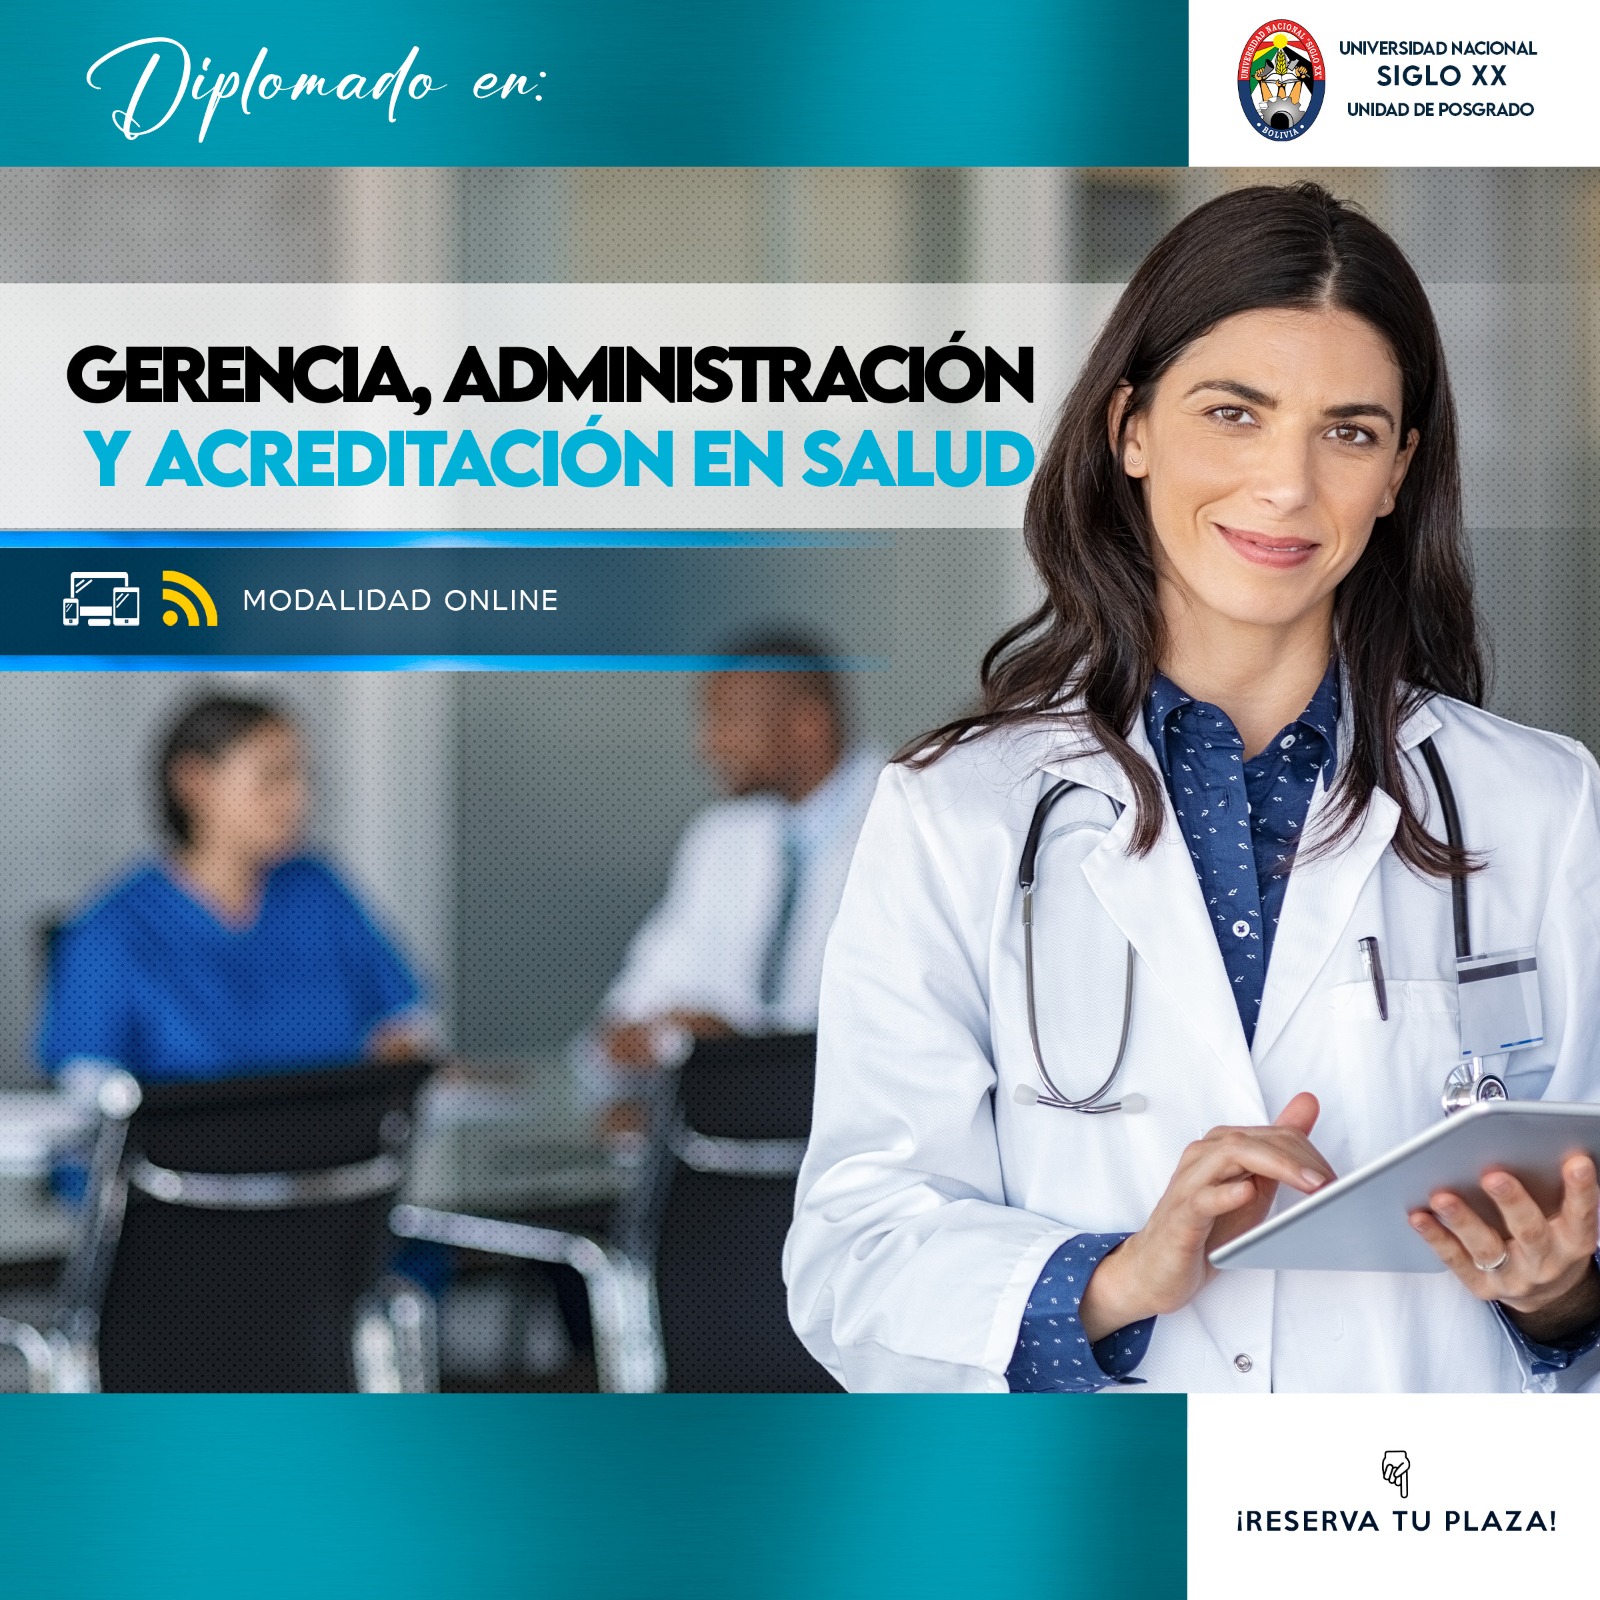 Diplomado Gerencia, Administración y Acreditación en Salud (Sucre)